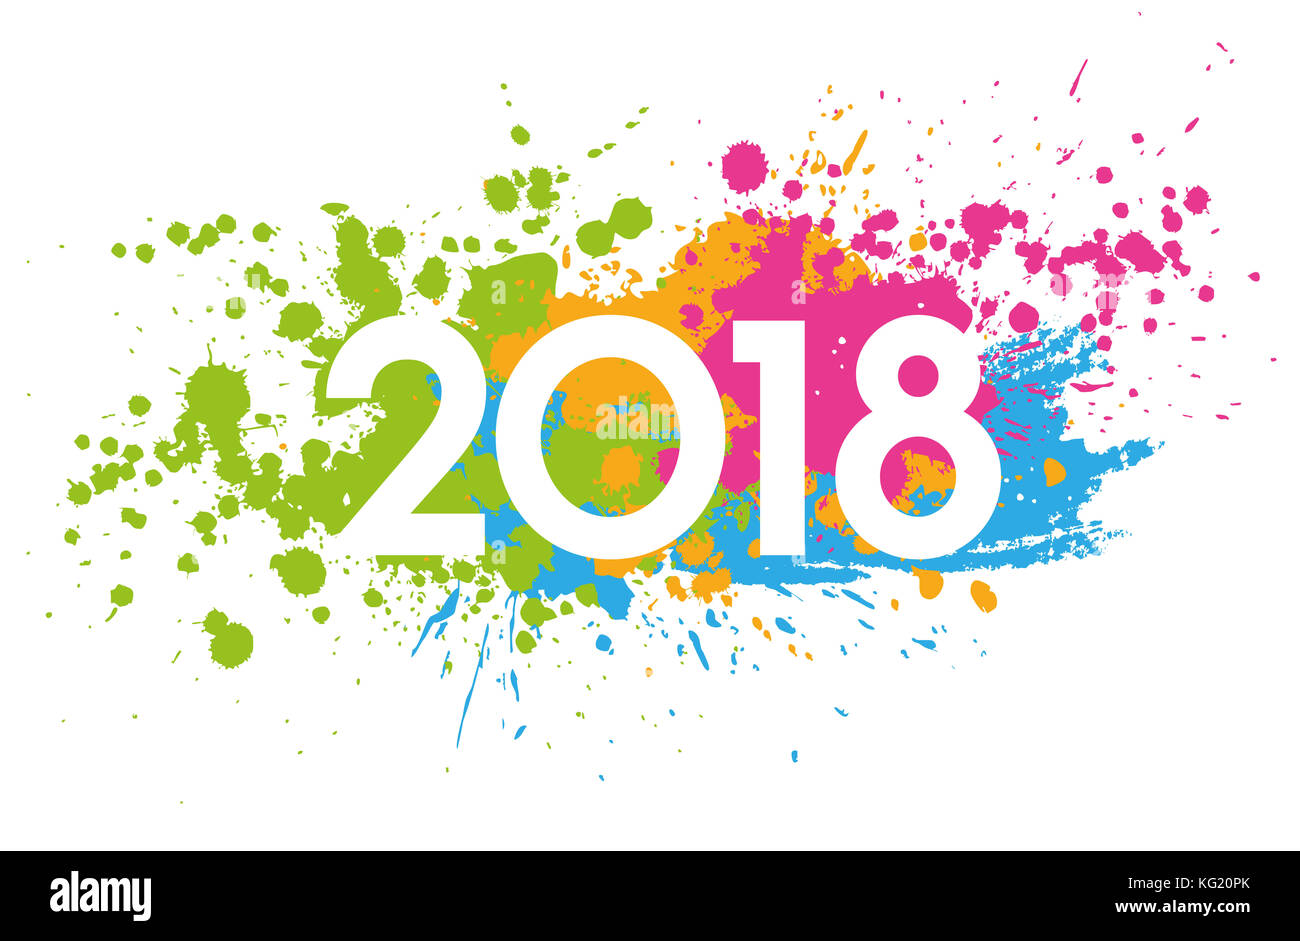 Neues Jahr 2018 Datum mit bunten Flecken bemalt Stockfoto